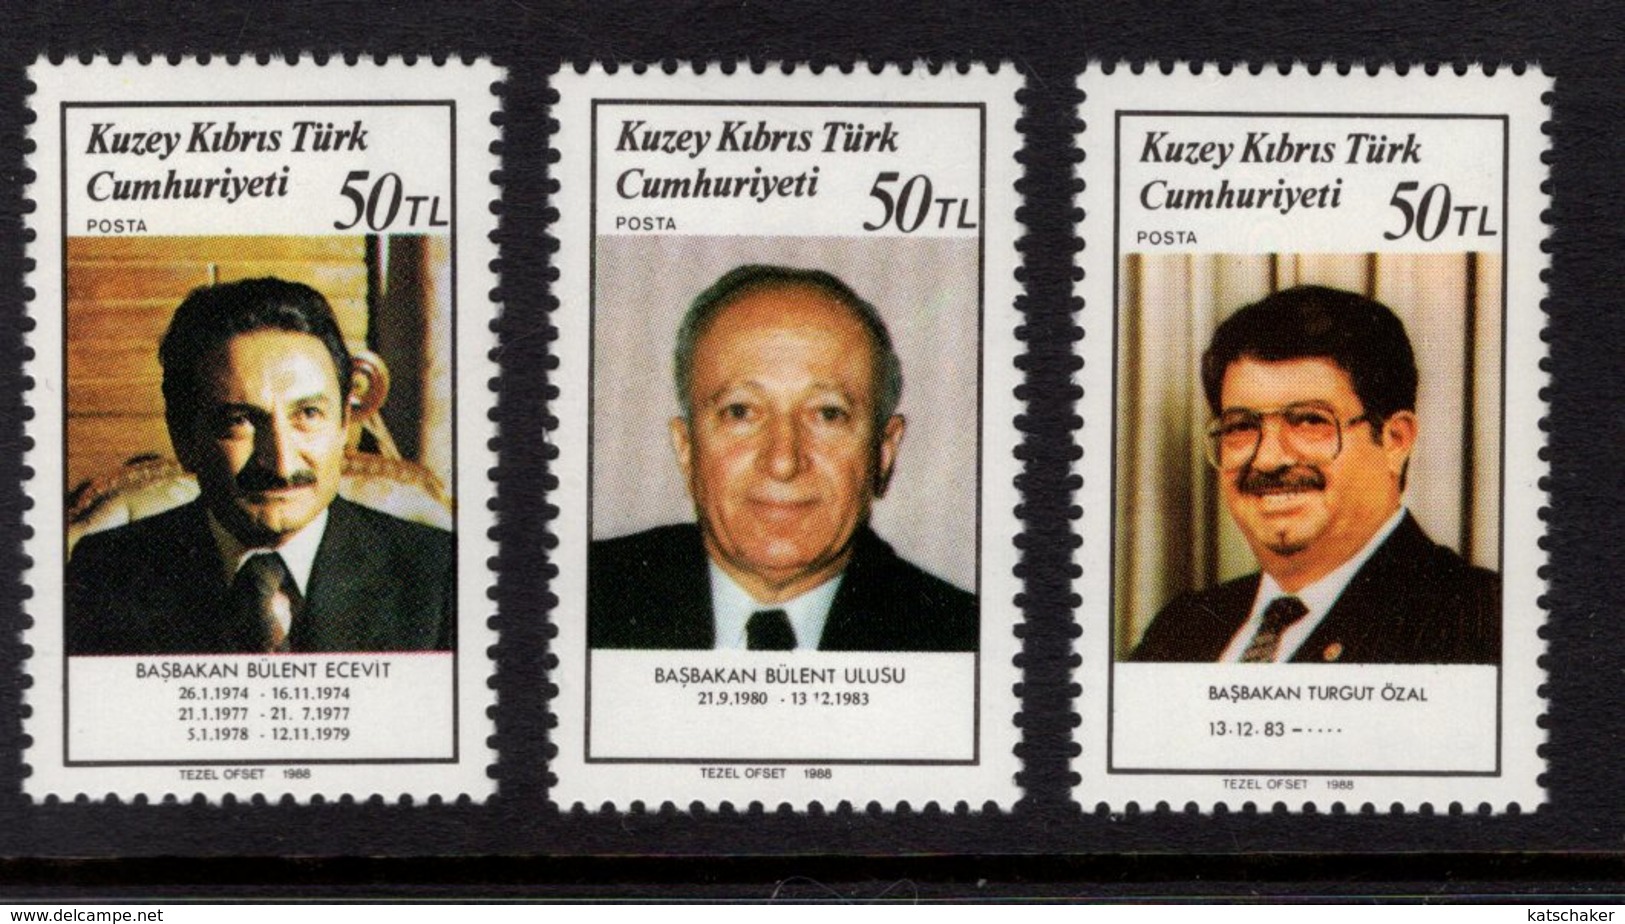 672546034 TURKISH CYPRUS 1988 POSTFRIS MINT NEVER HINGED POSTFRISCH EINWANDFREI SCOTT 227 229 TURKISH PRIME MINISTERS - Neufs